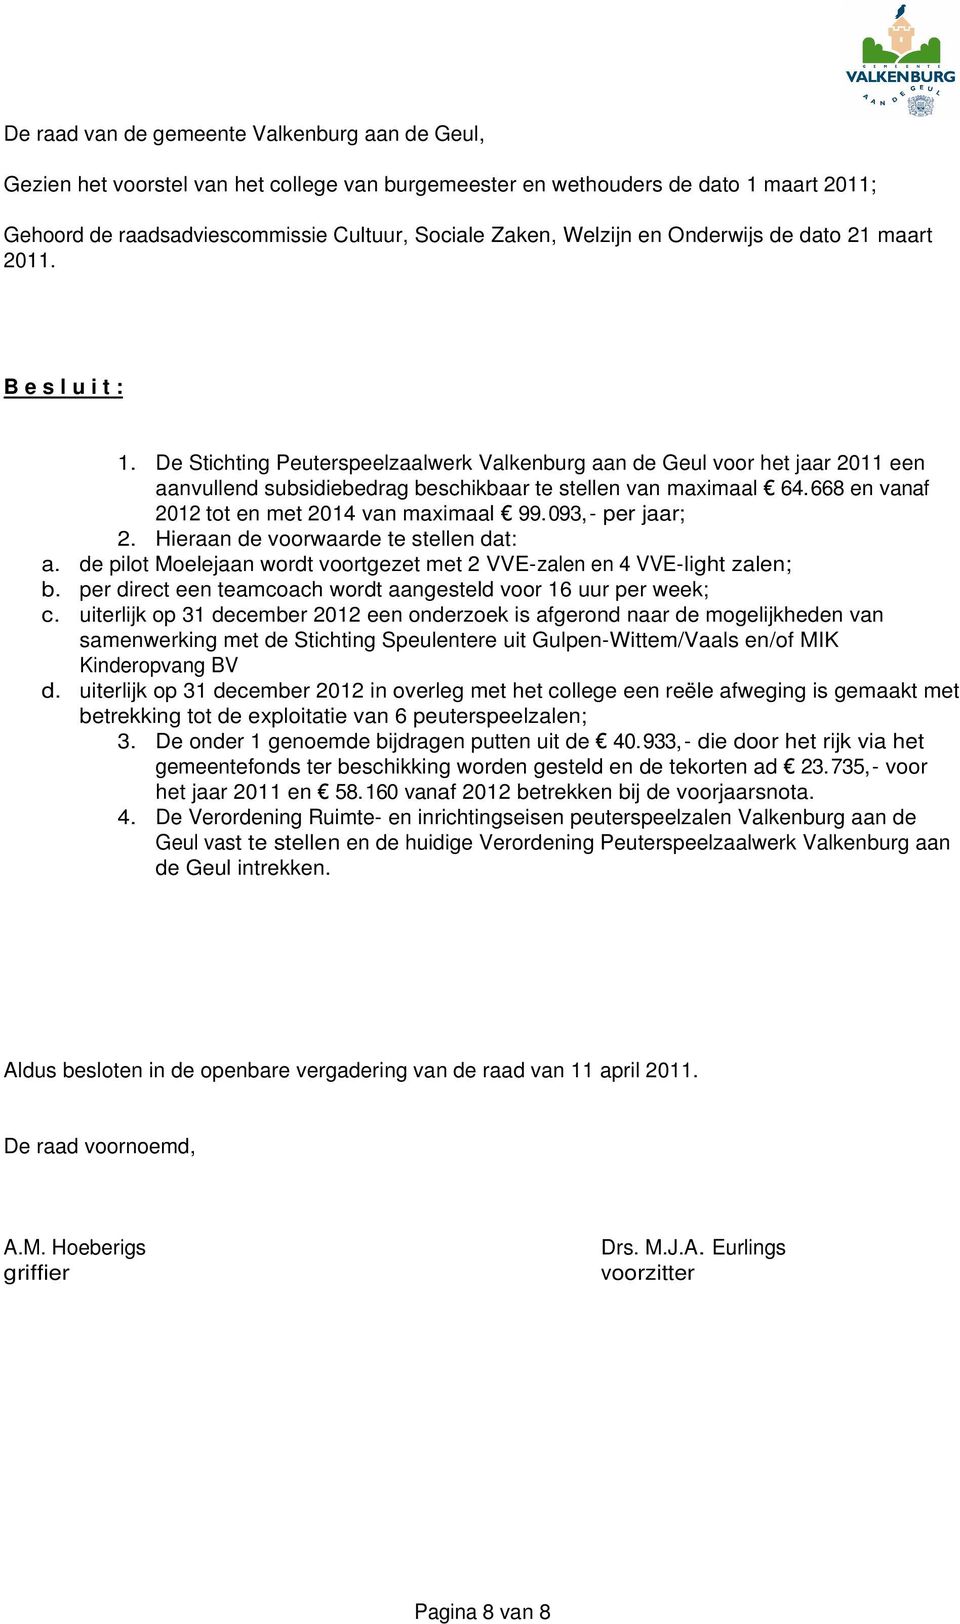 De Stichting Peuterspeelzaalwerk Valkenburg aan de Geul voor het jaar 2011 een aanvullend subsidiebedrag beschikbaar te stellen van maximaal 64.668 en vanaf 2012 tot en met 2014 van maximaal 99.